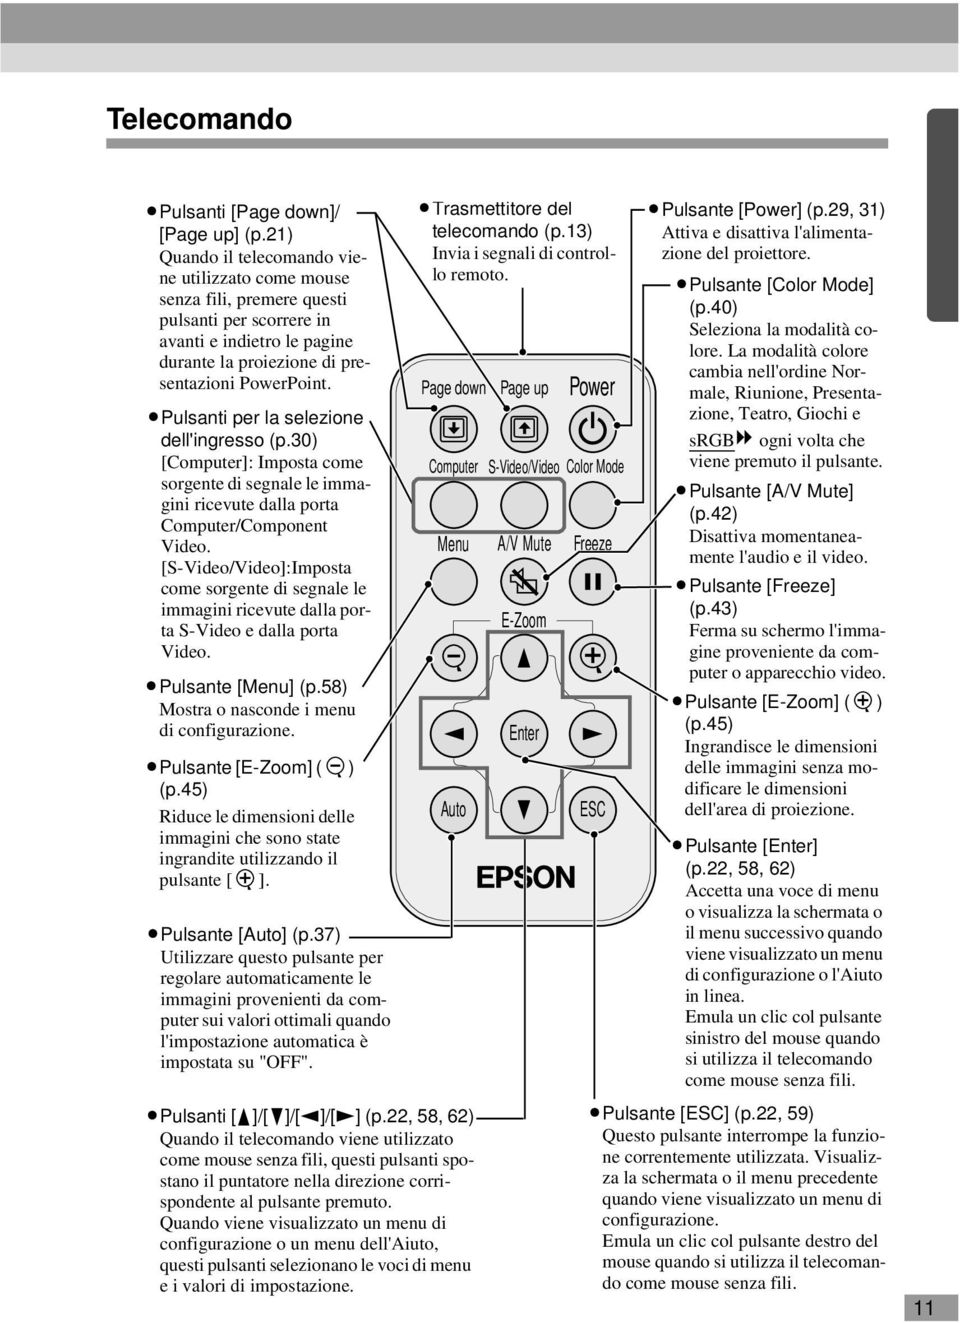 Pulsanti per la selezione dell'ingresso (p.30) [Computer]: Imposta come sorgente di segnale le immagini ricevute dalla porta Computer/Component Video.